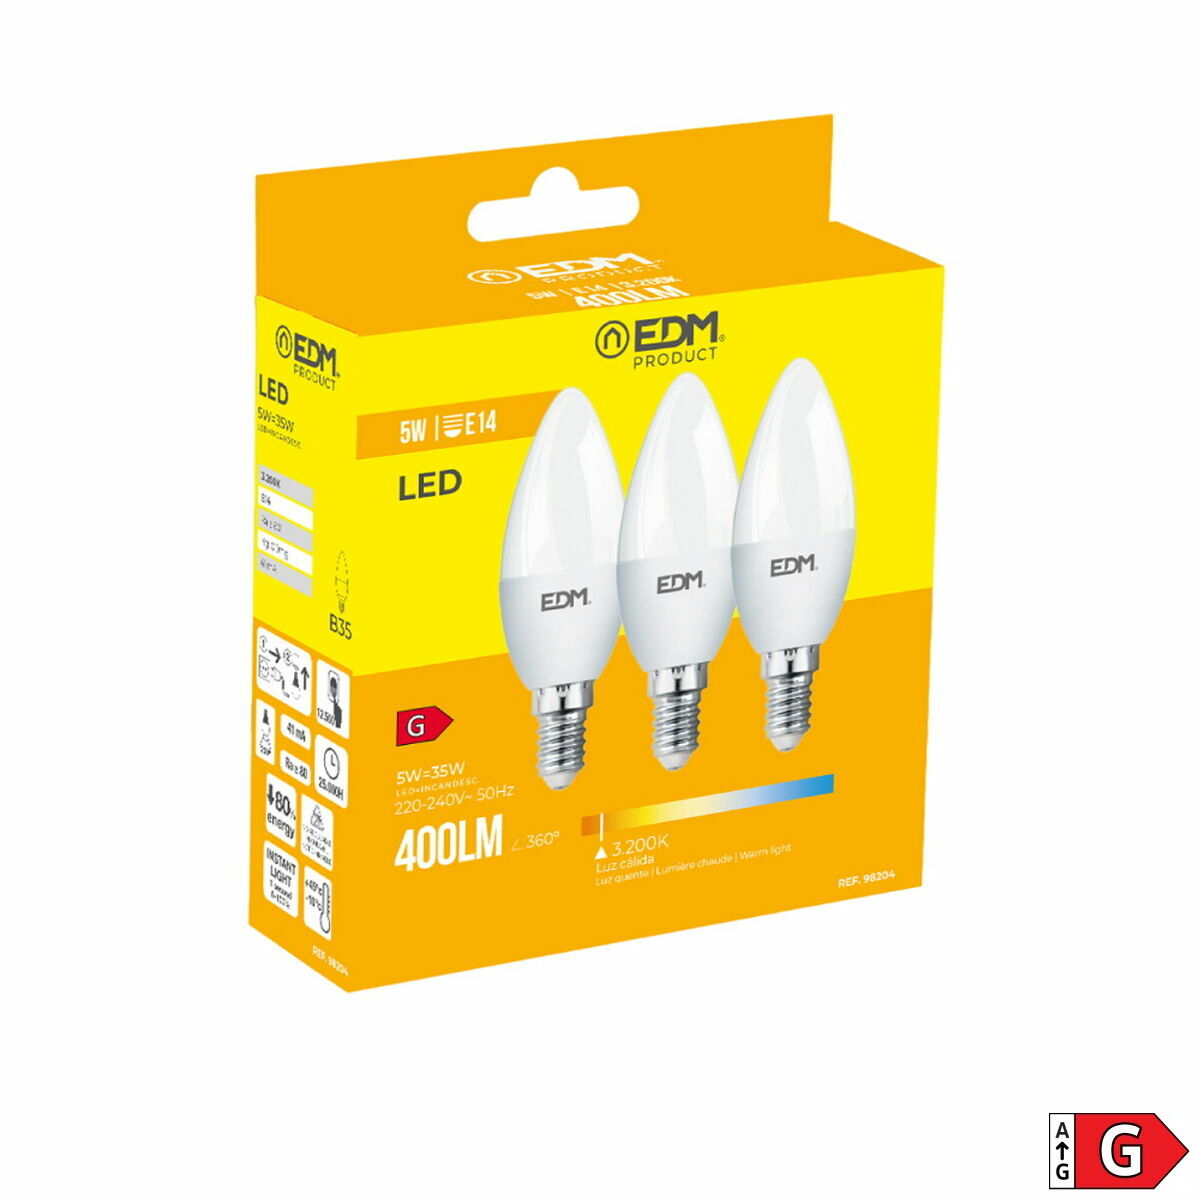 Pack of 3 LED bulbs EDM G 5 W E14 400 lm Ø 3,6 x 10 cm (3200 K)